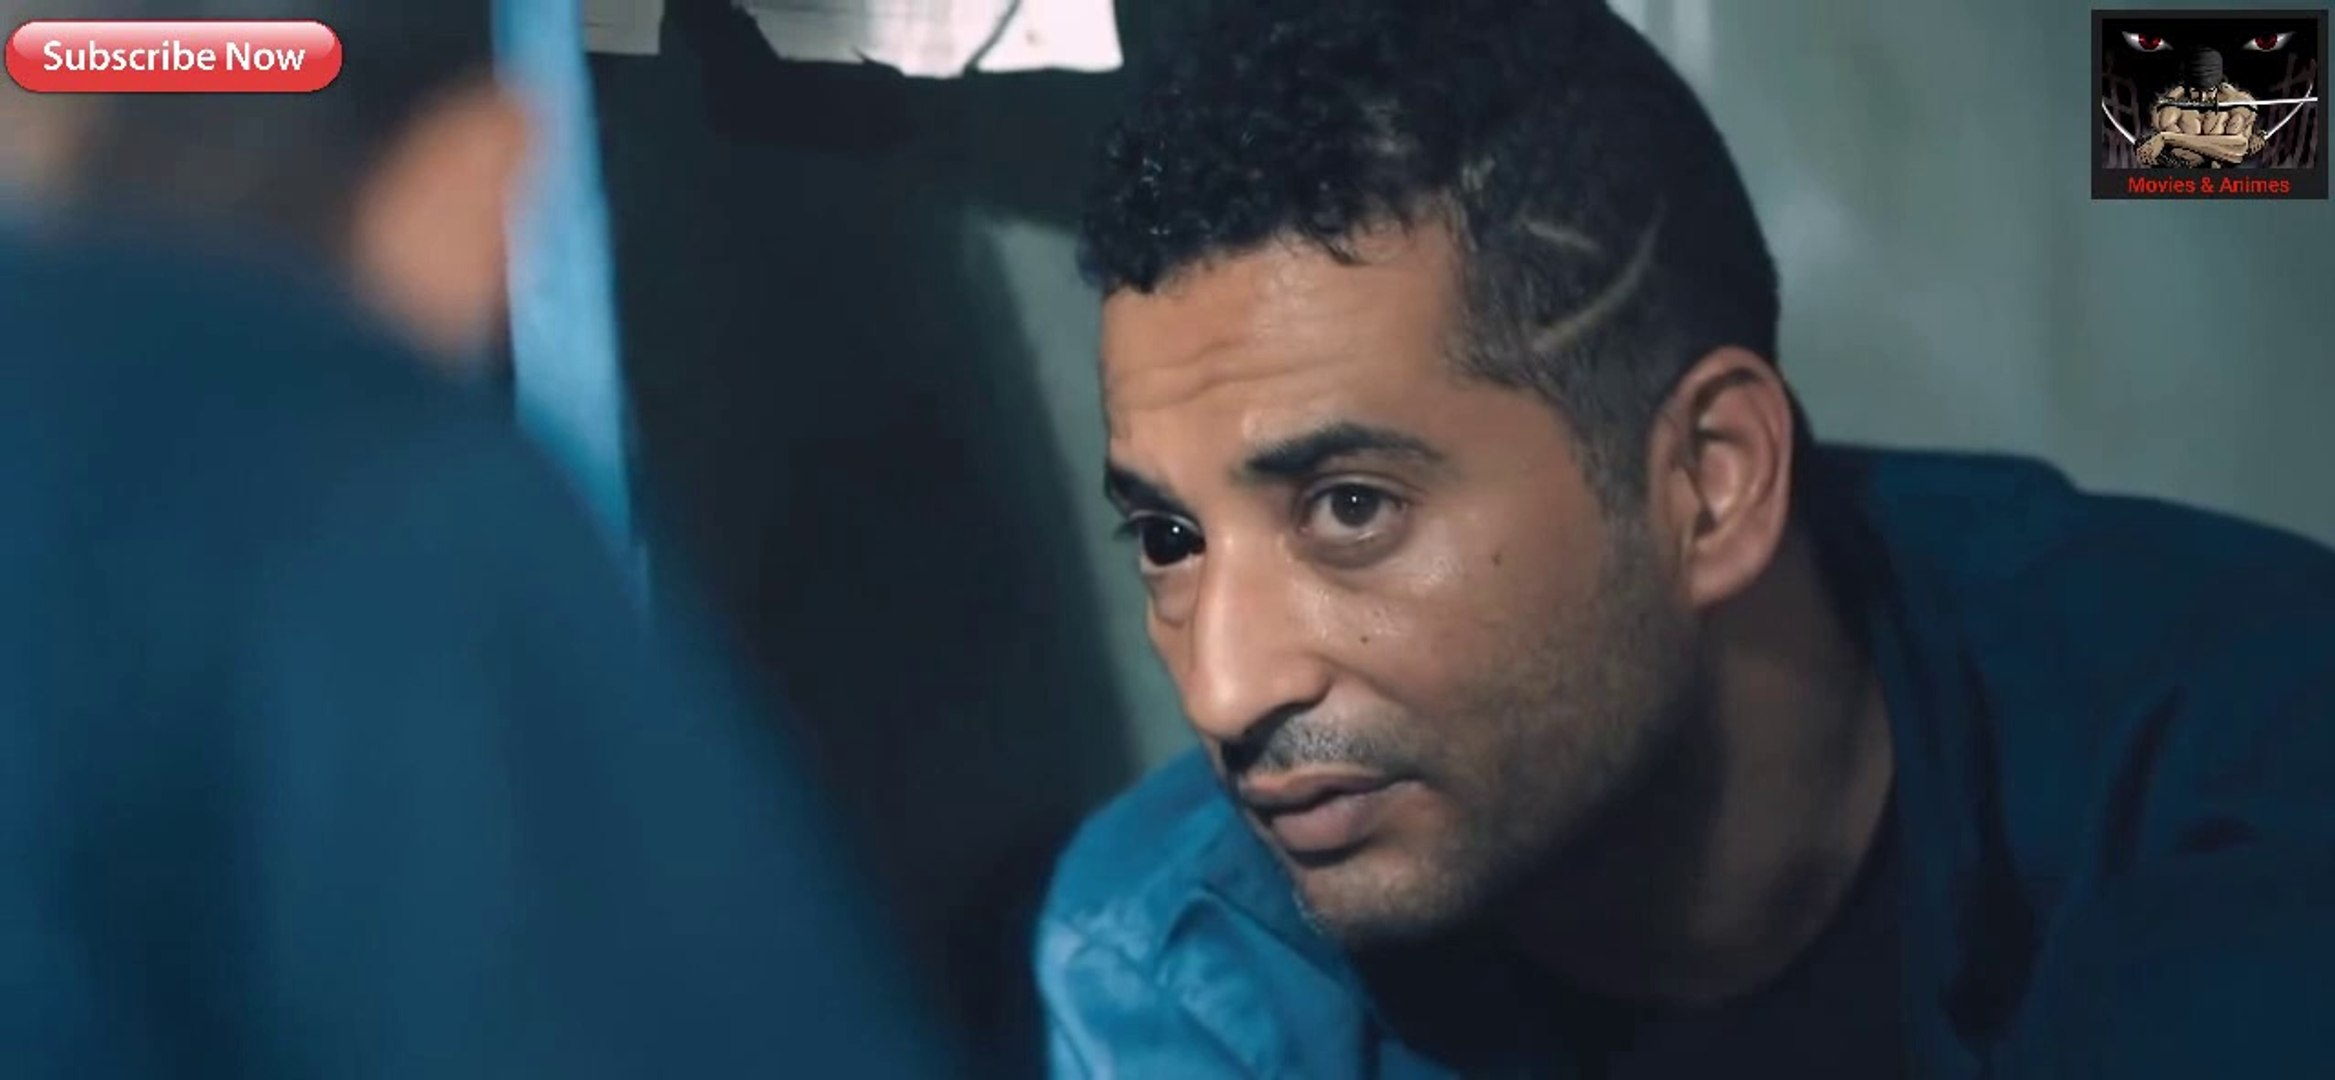 فيلم حديد بطولة عمرو سعد ودرة كامل جودة عالية - فيديو Dailymotion